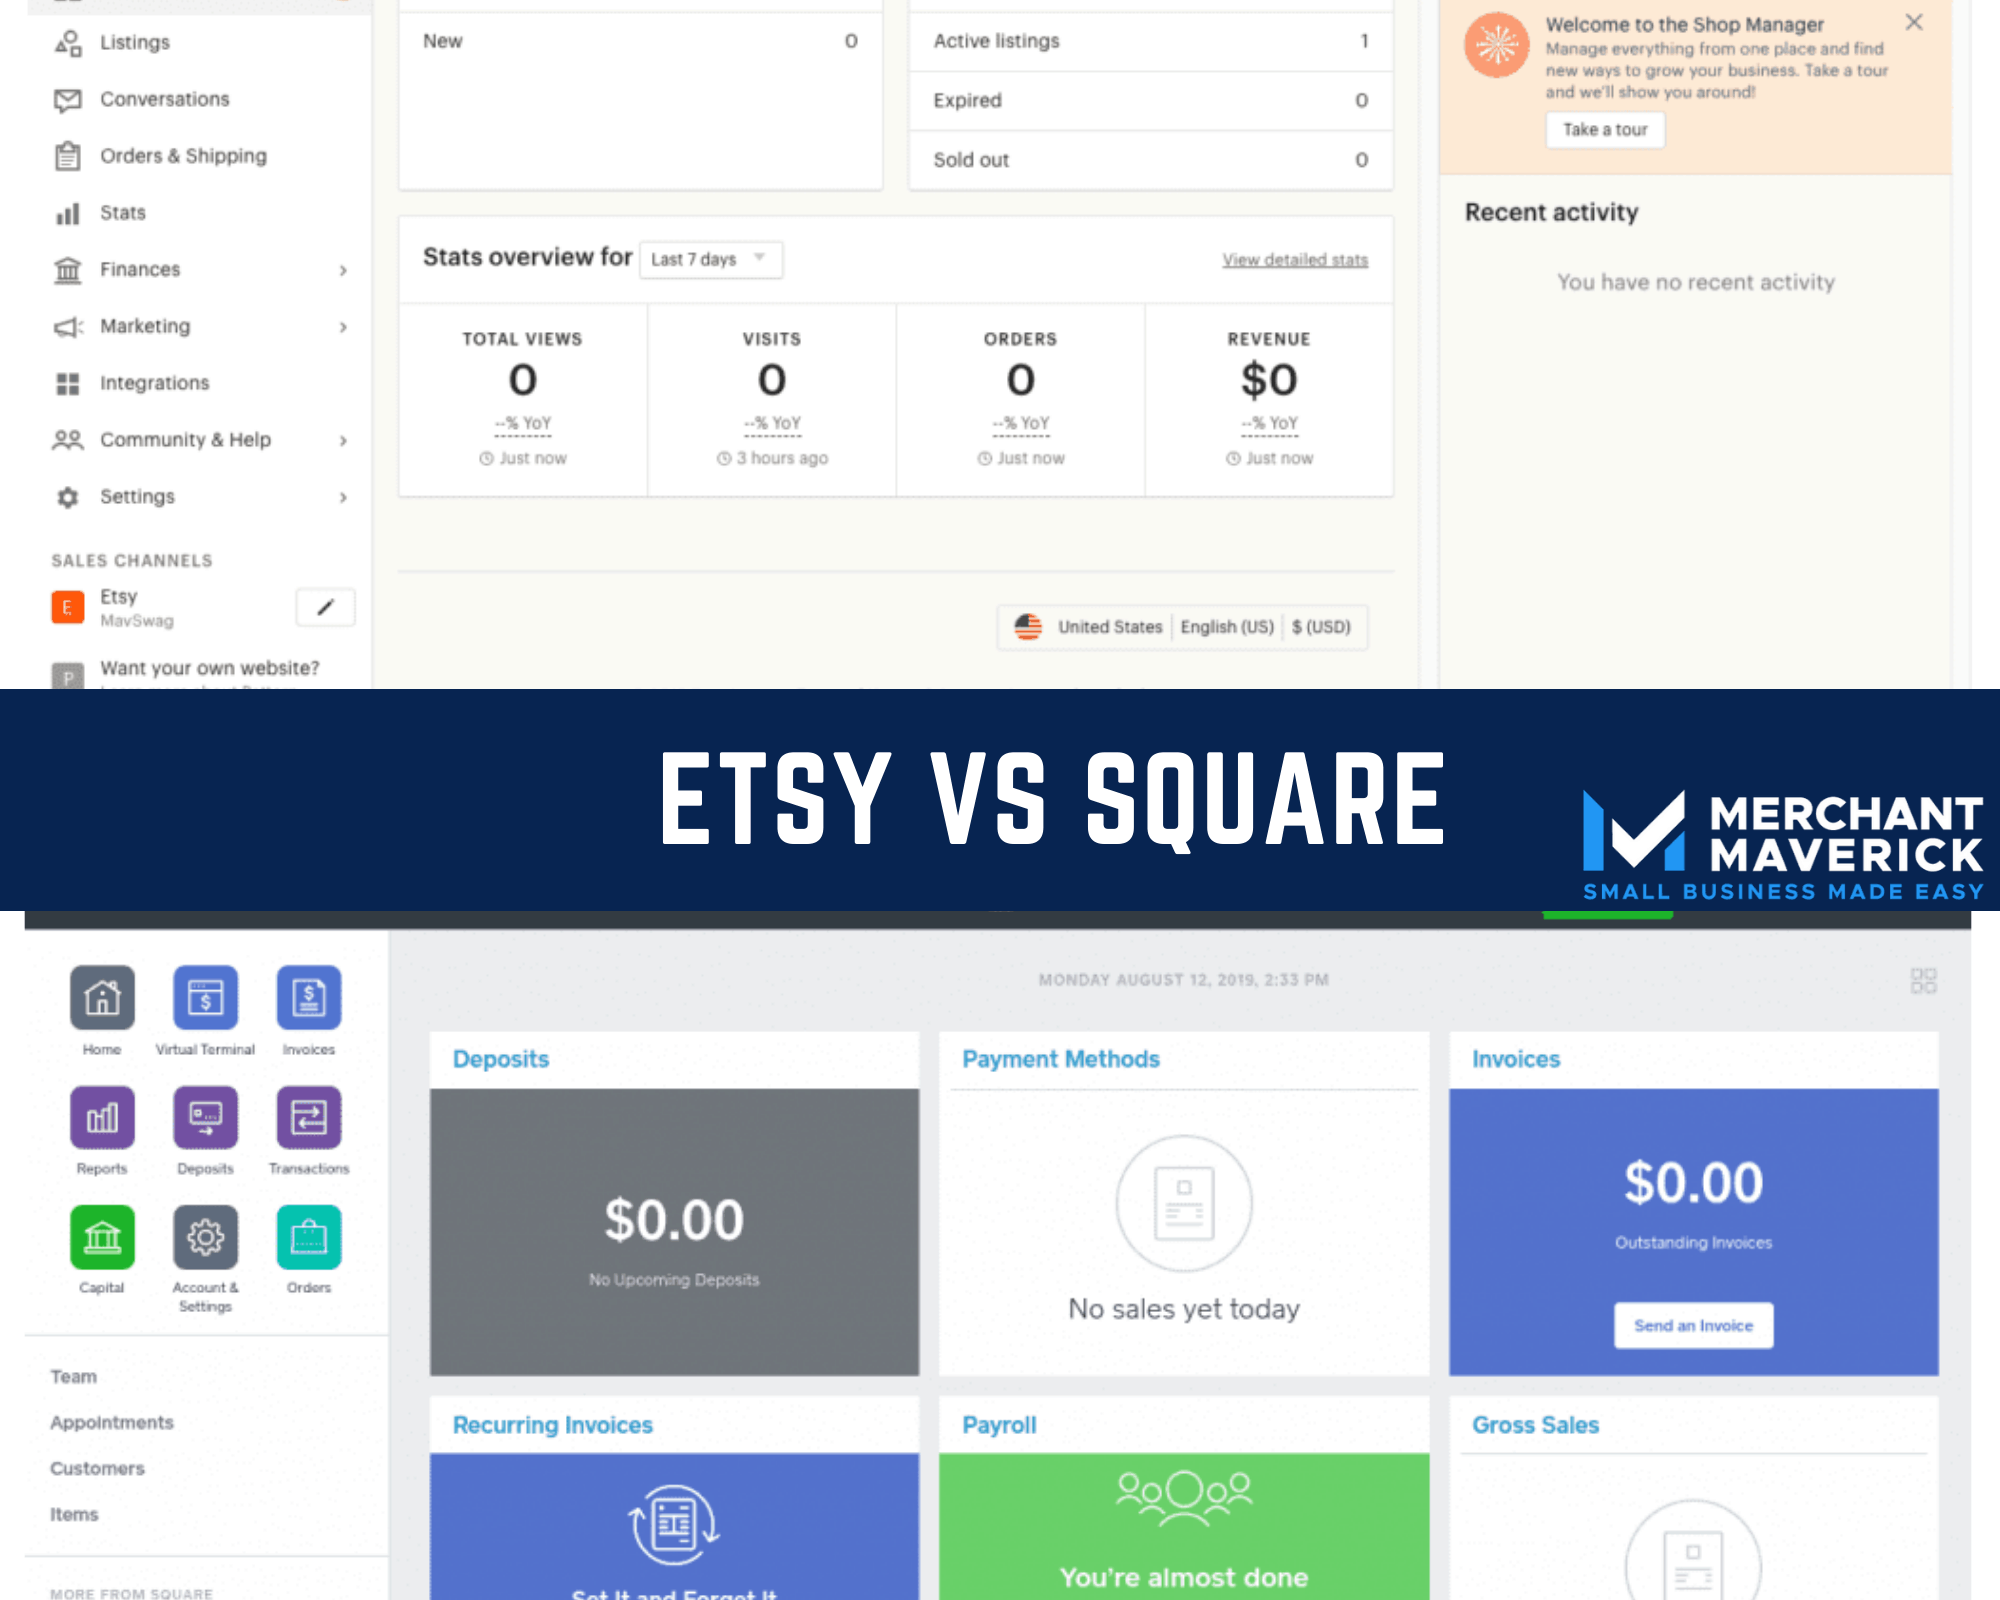 Etsy VS Square